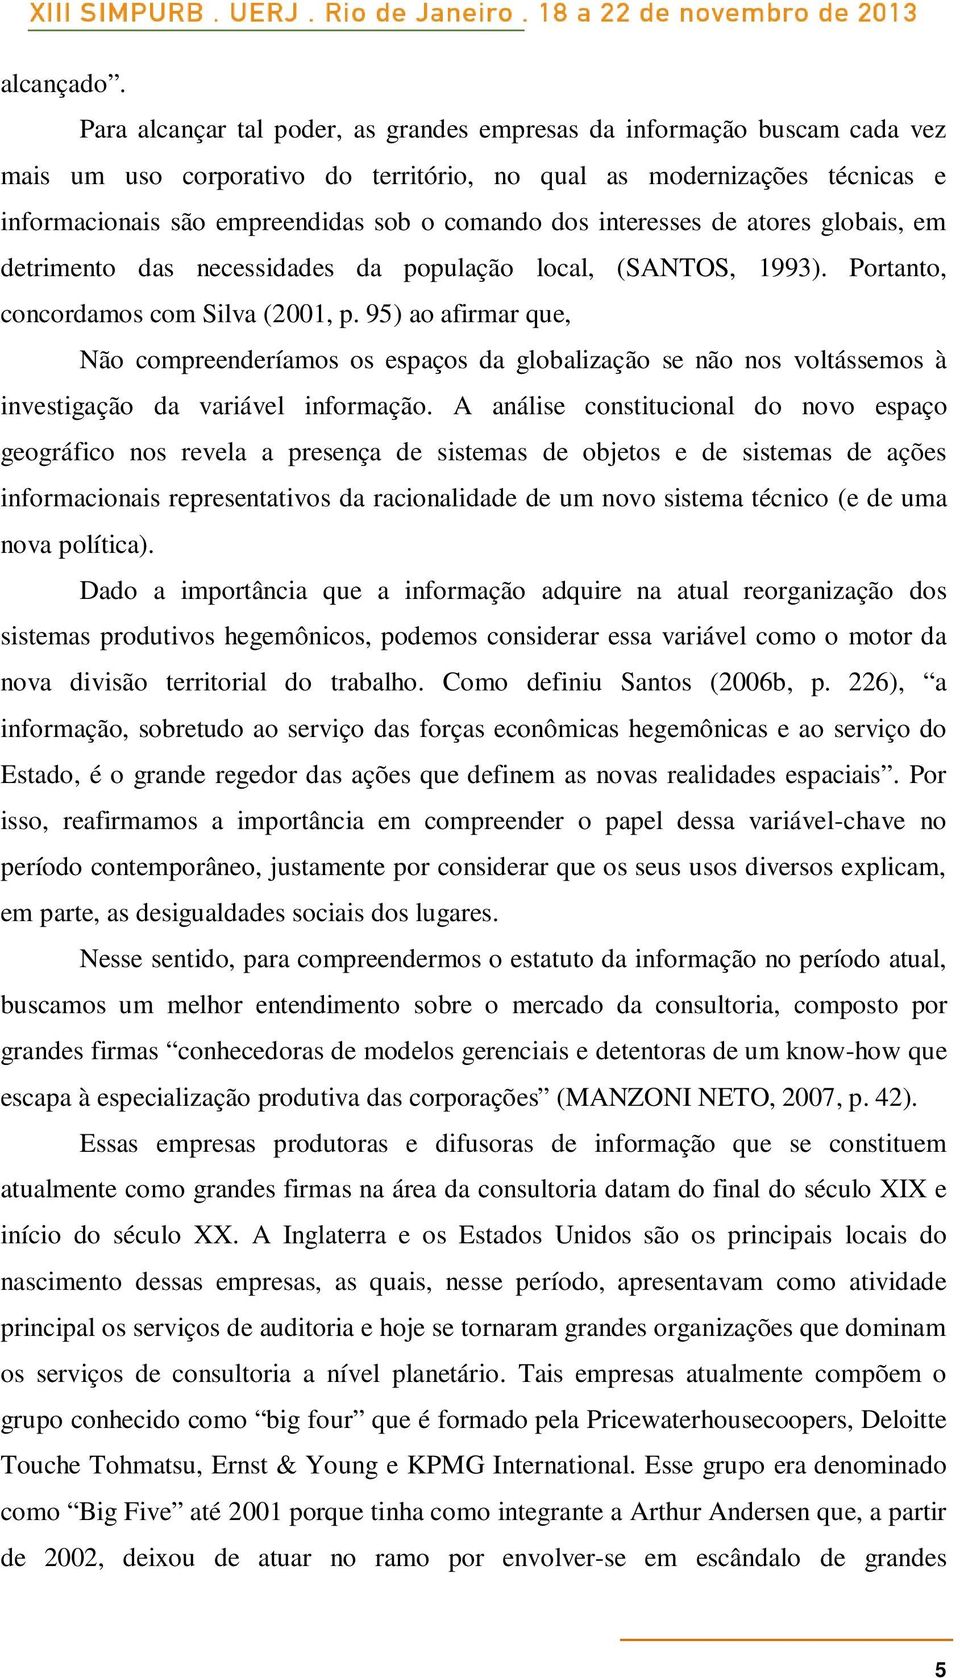 interesses de atores globais, em detrimento das necessidades da população local, (SANTOS, 1993). Portanto, concordamos com Silva (2001, p.